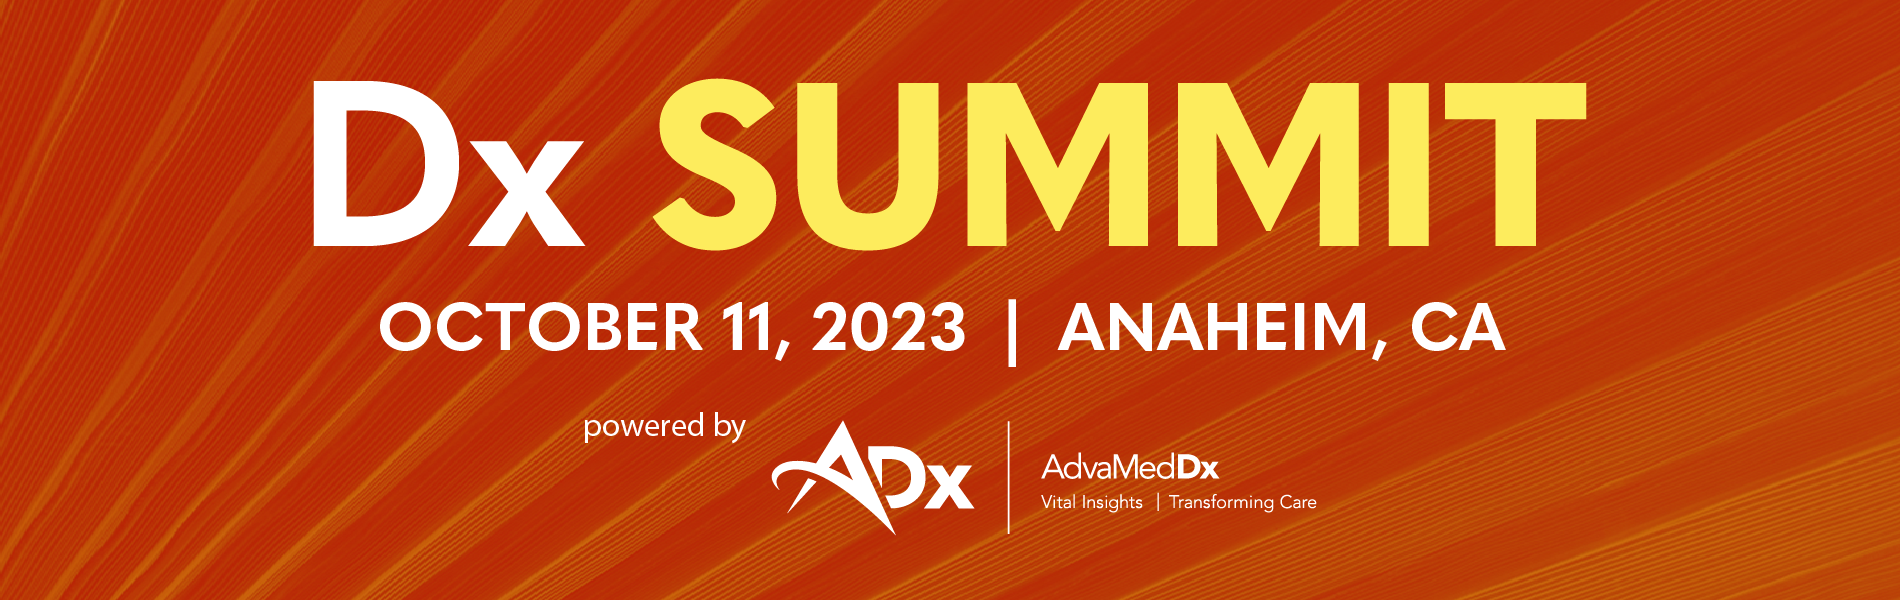 AdvaMed Dx Summit